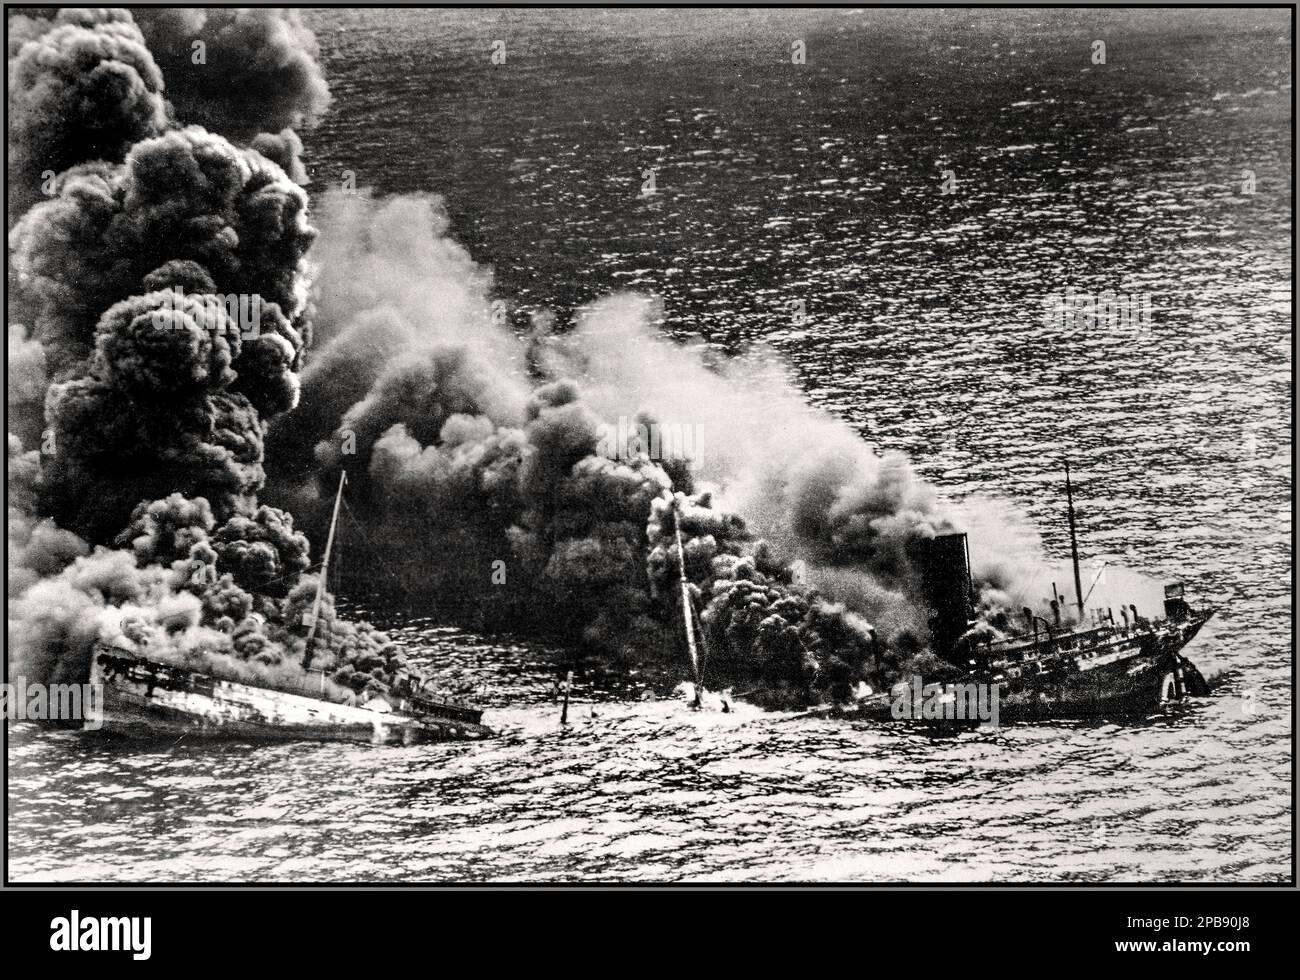 WW2 bataille de l'Atlantique sous-marin nazi Torpedo le pétrolier allié Dixie Arrow a torpillé dans l'océan Atlantique par le sous-marin allemand nazi. Navire en midship qui s'émiette sous la chaleur du feu, s'installe vers le fond de l'océan, 26 mars 1942 Banque D'Images